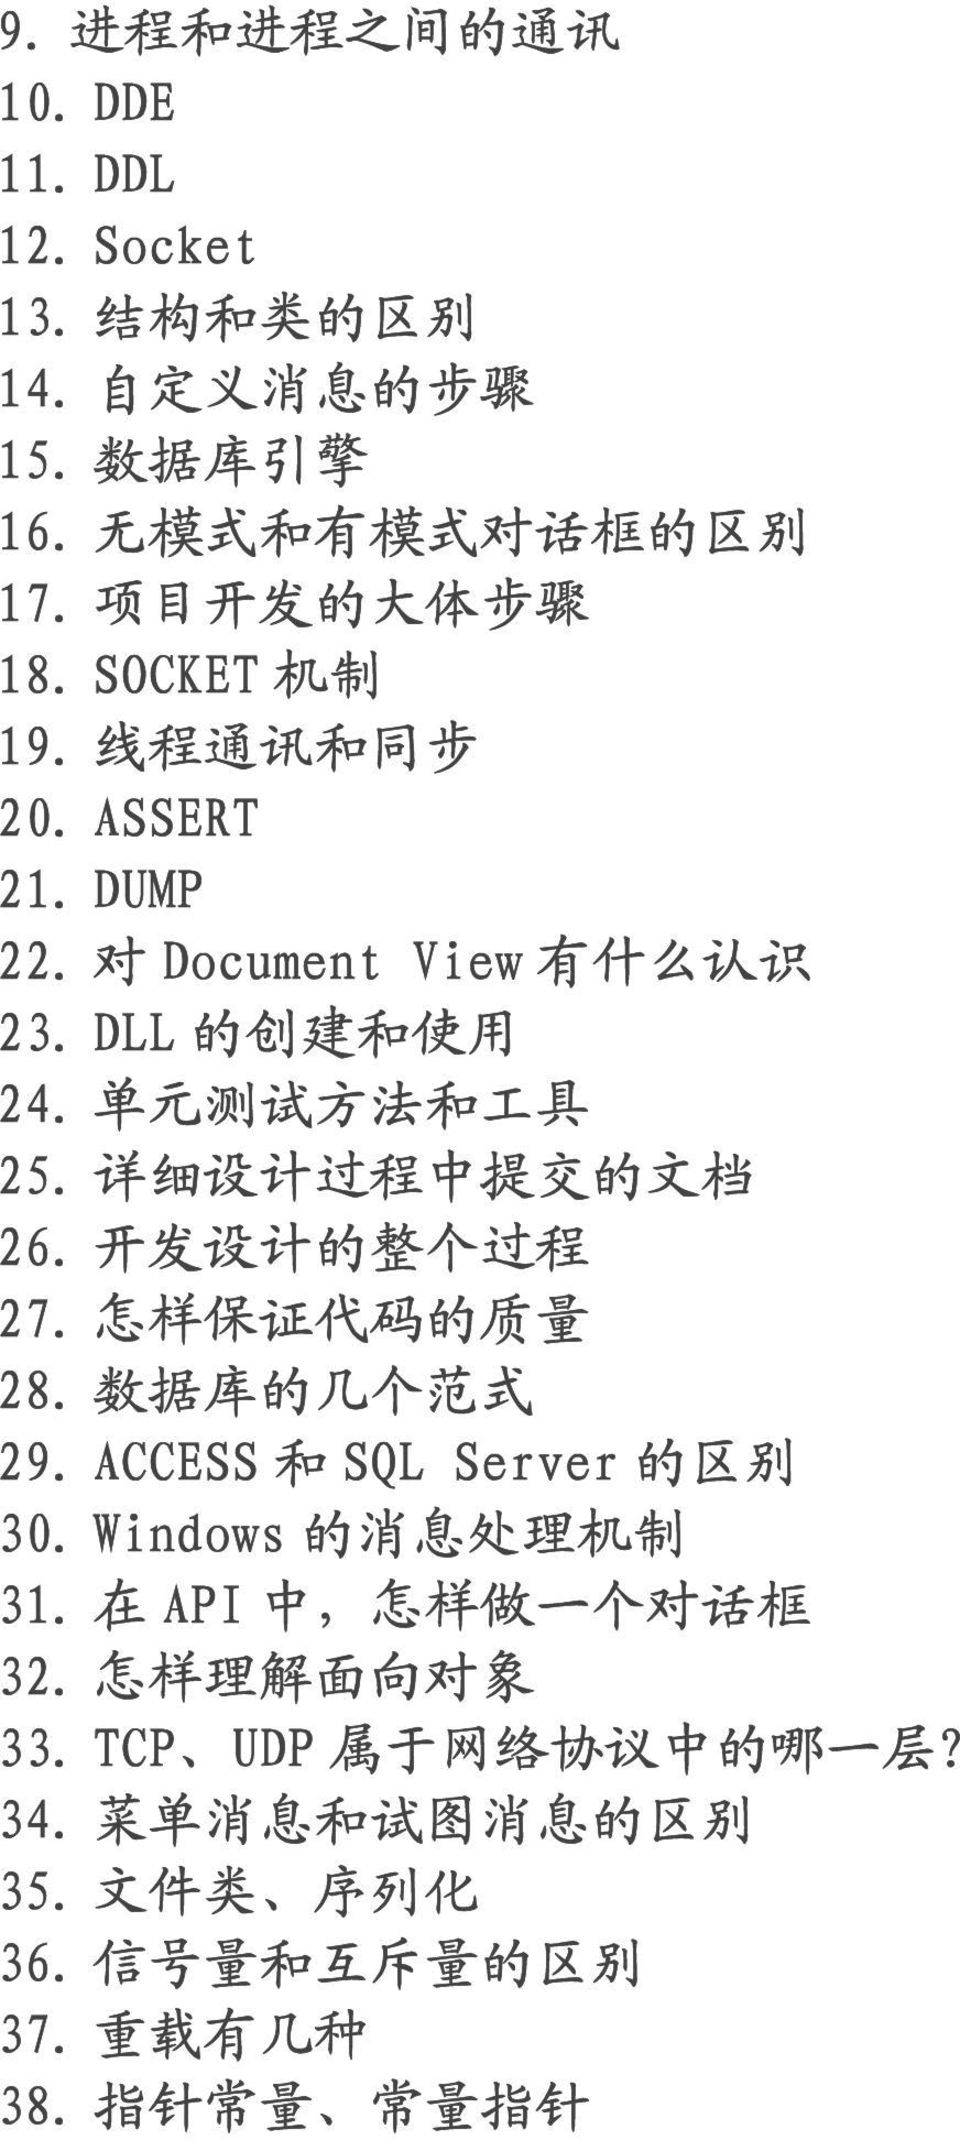 详 细 设 计 过 程 中 提 交 的 文 档 26. 开 发 设 计 的 整 个 过 程 27. 怎 样 保 证 代 码 的 质 量 28. 数 据 库 的 几 个 范 式 29. ACCESS 和 SQL Server 的 区 别 30. Windows 的 消 息 处 理 机 制 31.